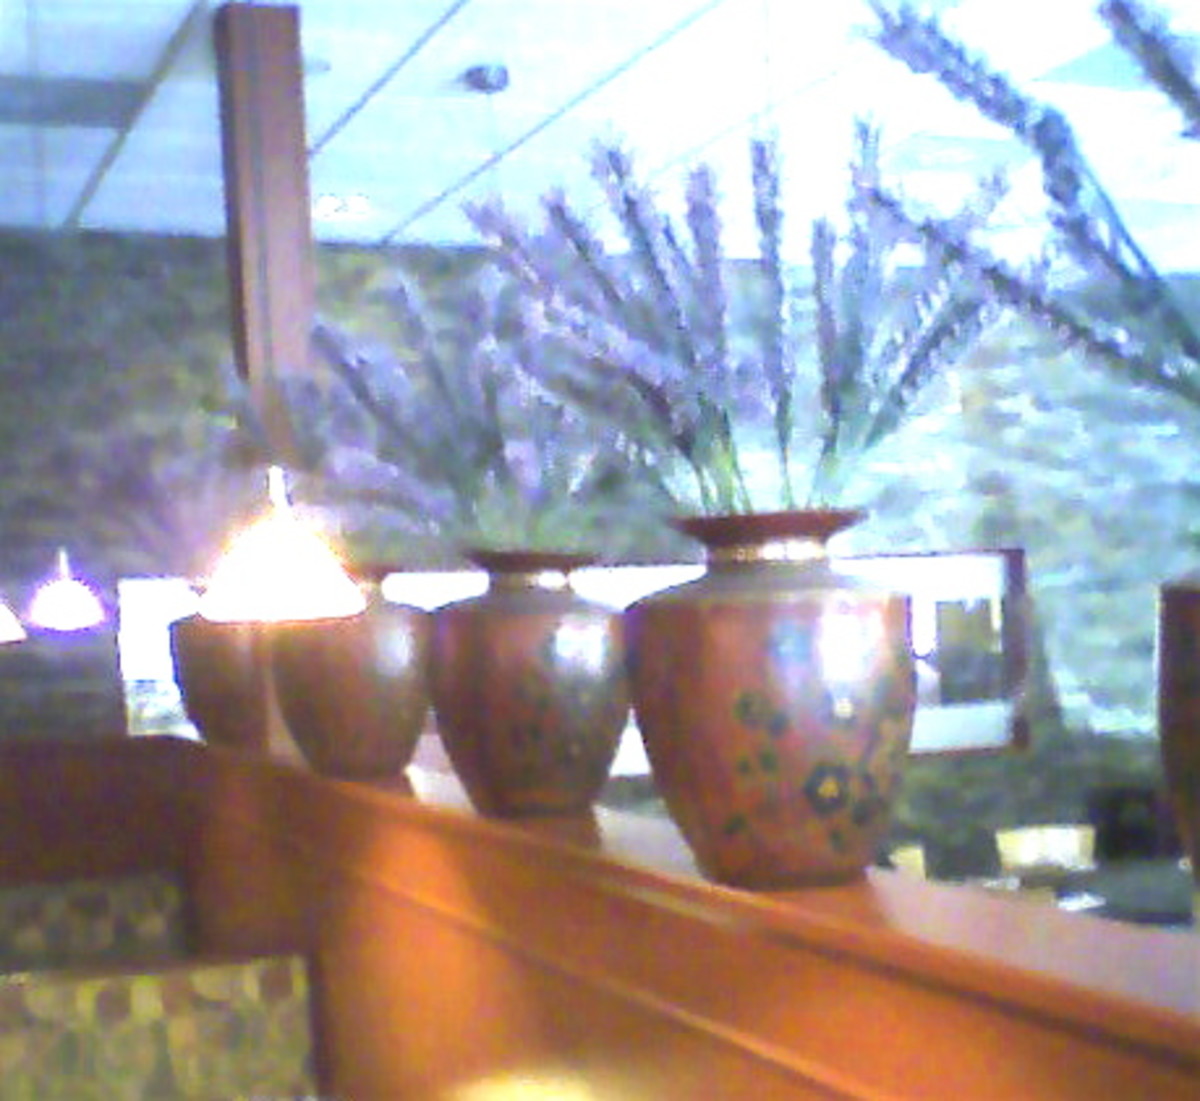 Room divider with lavender pots.